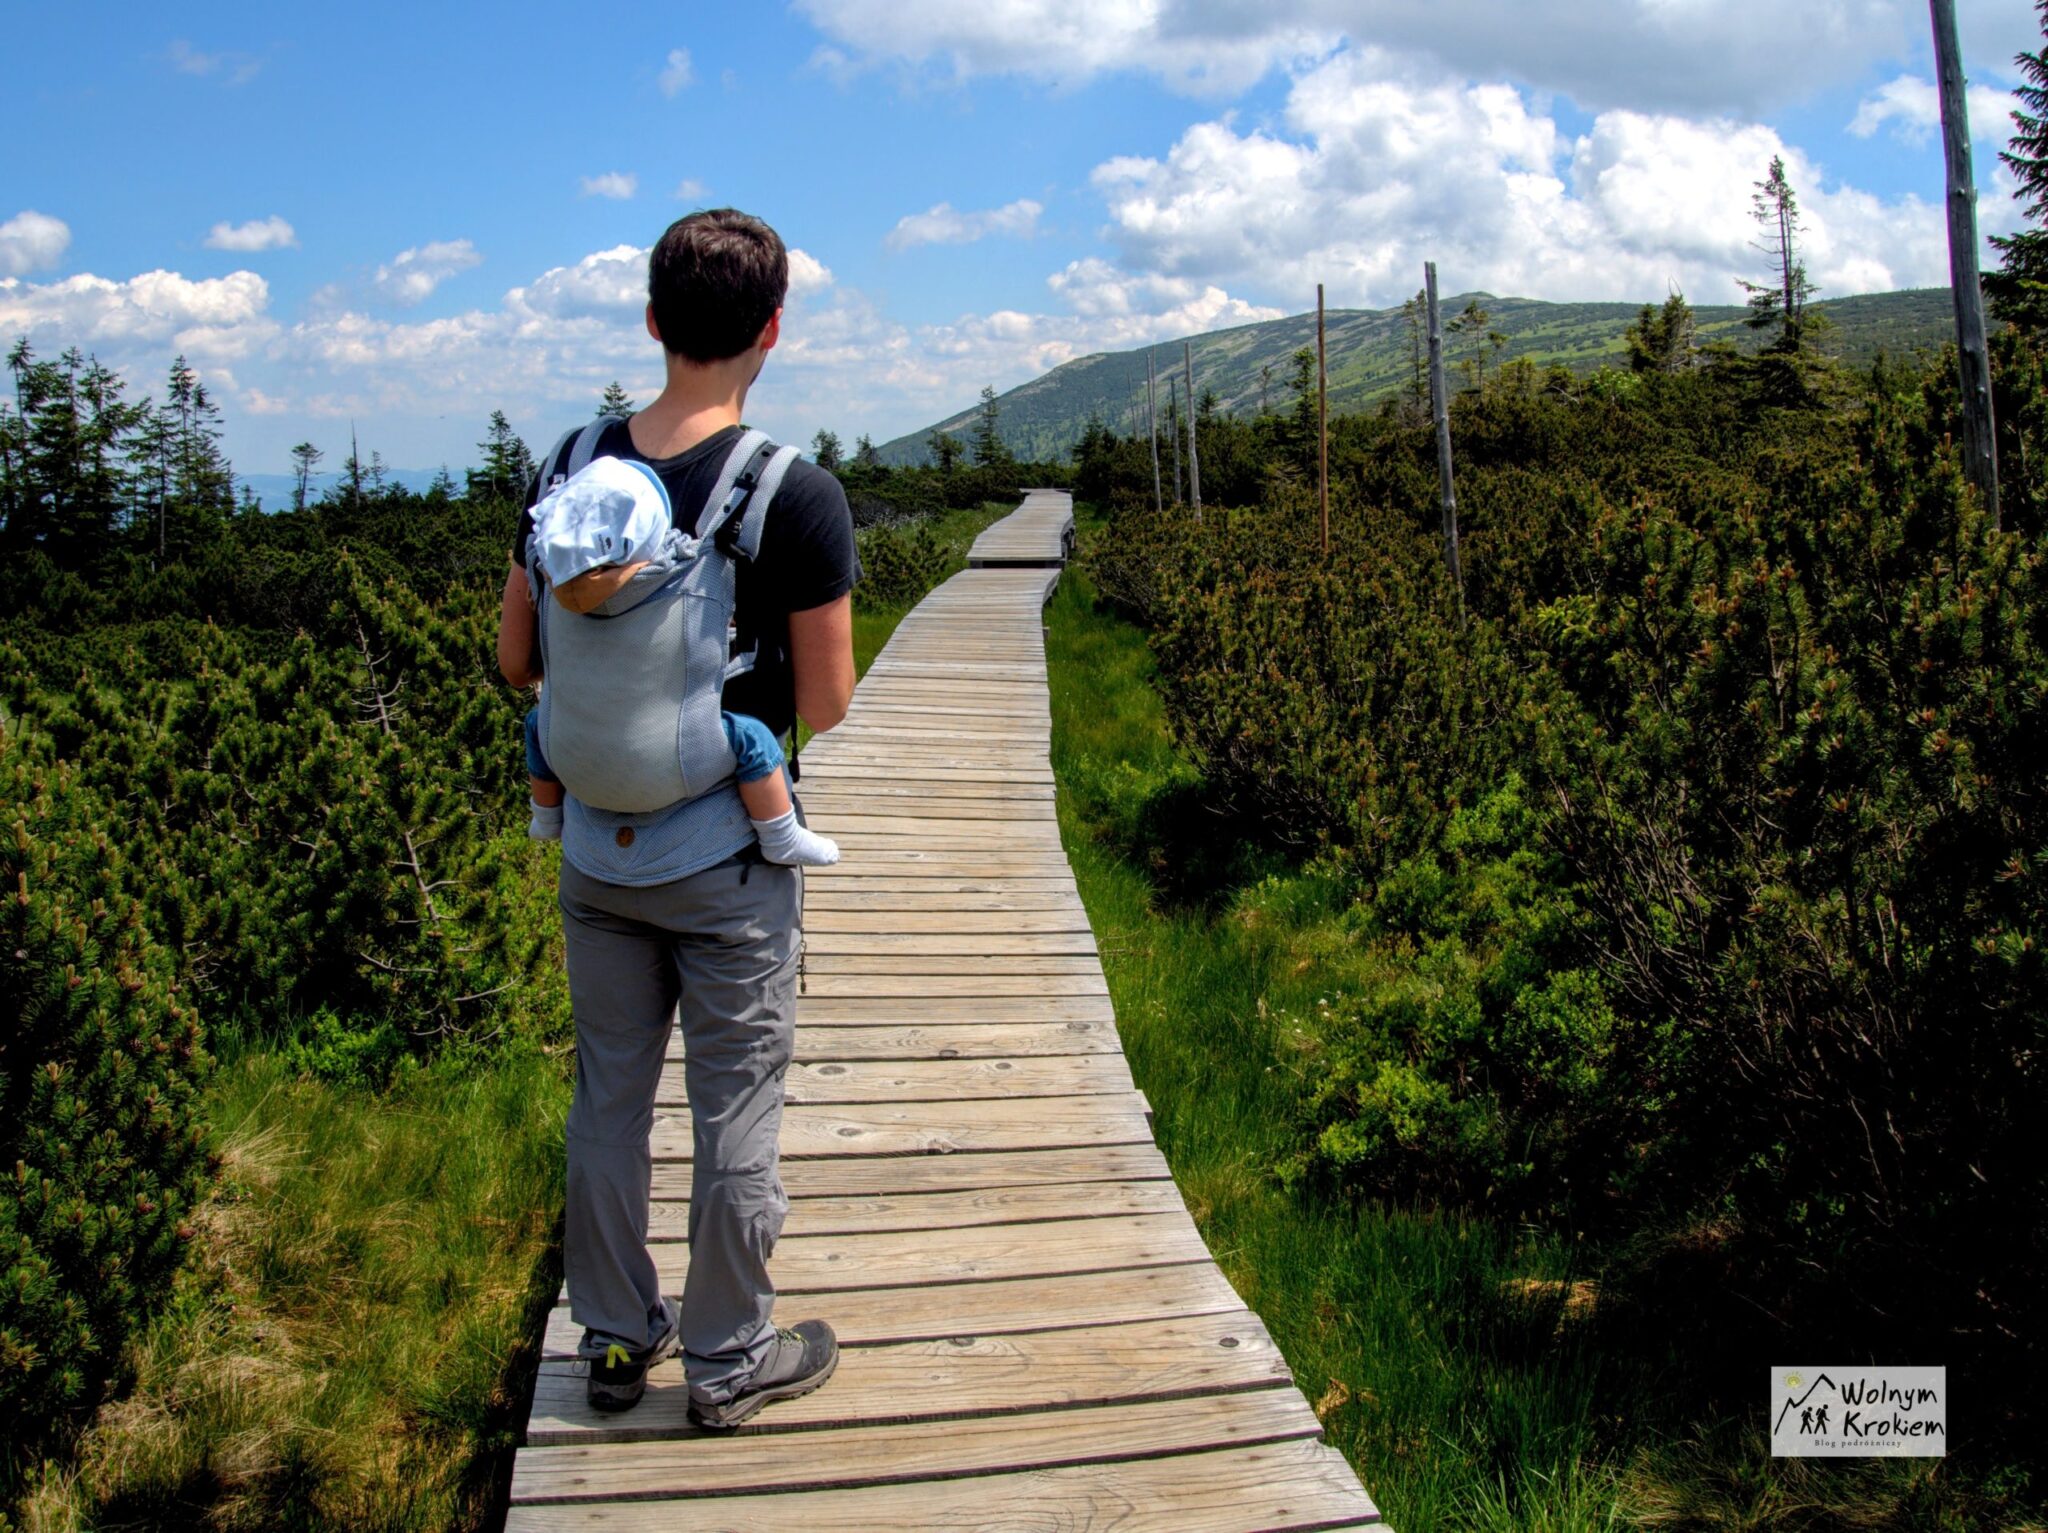 Poradnik podróżniczy młodego rodzica - jak zorganizować wyjazd w góry z małym dzieckiem?